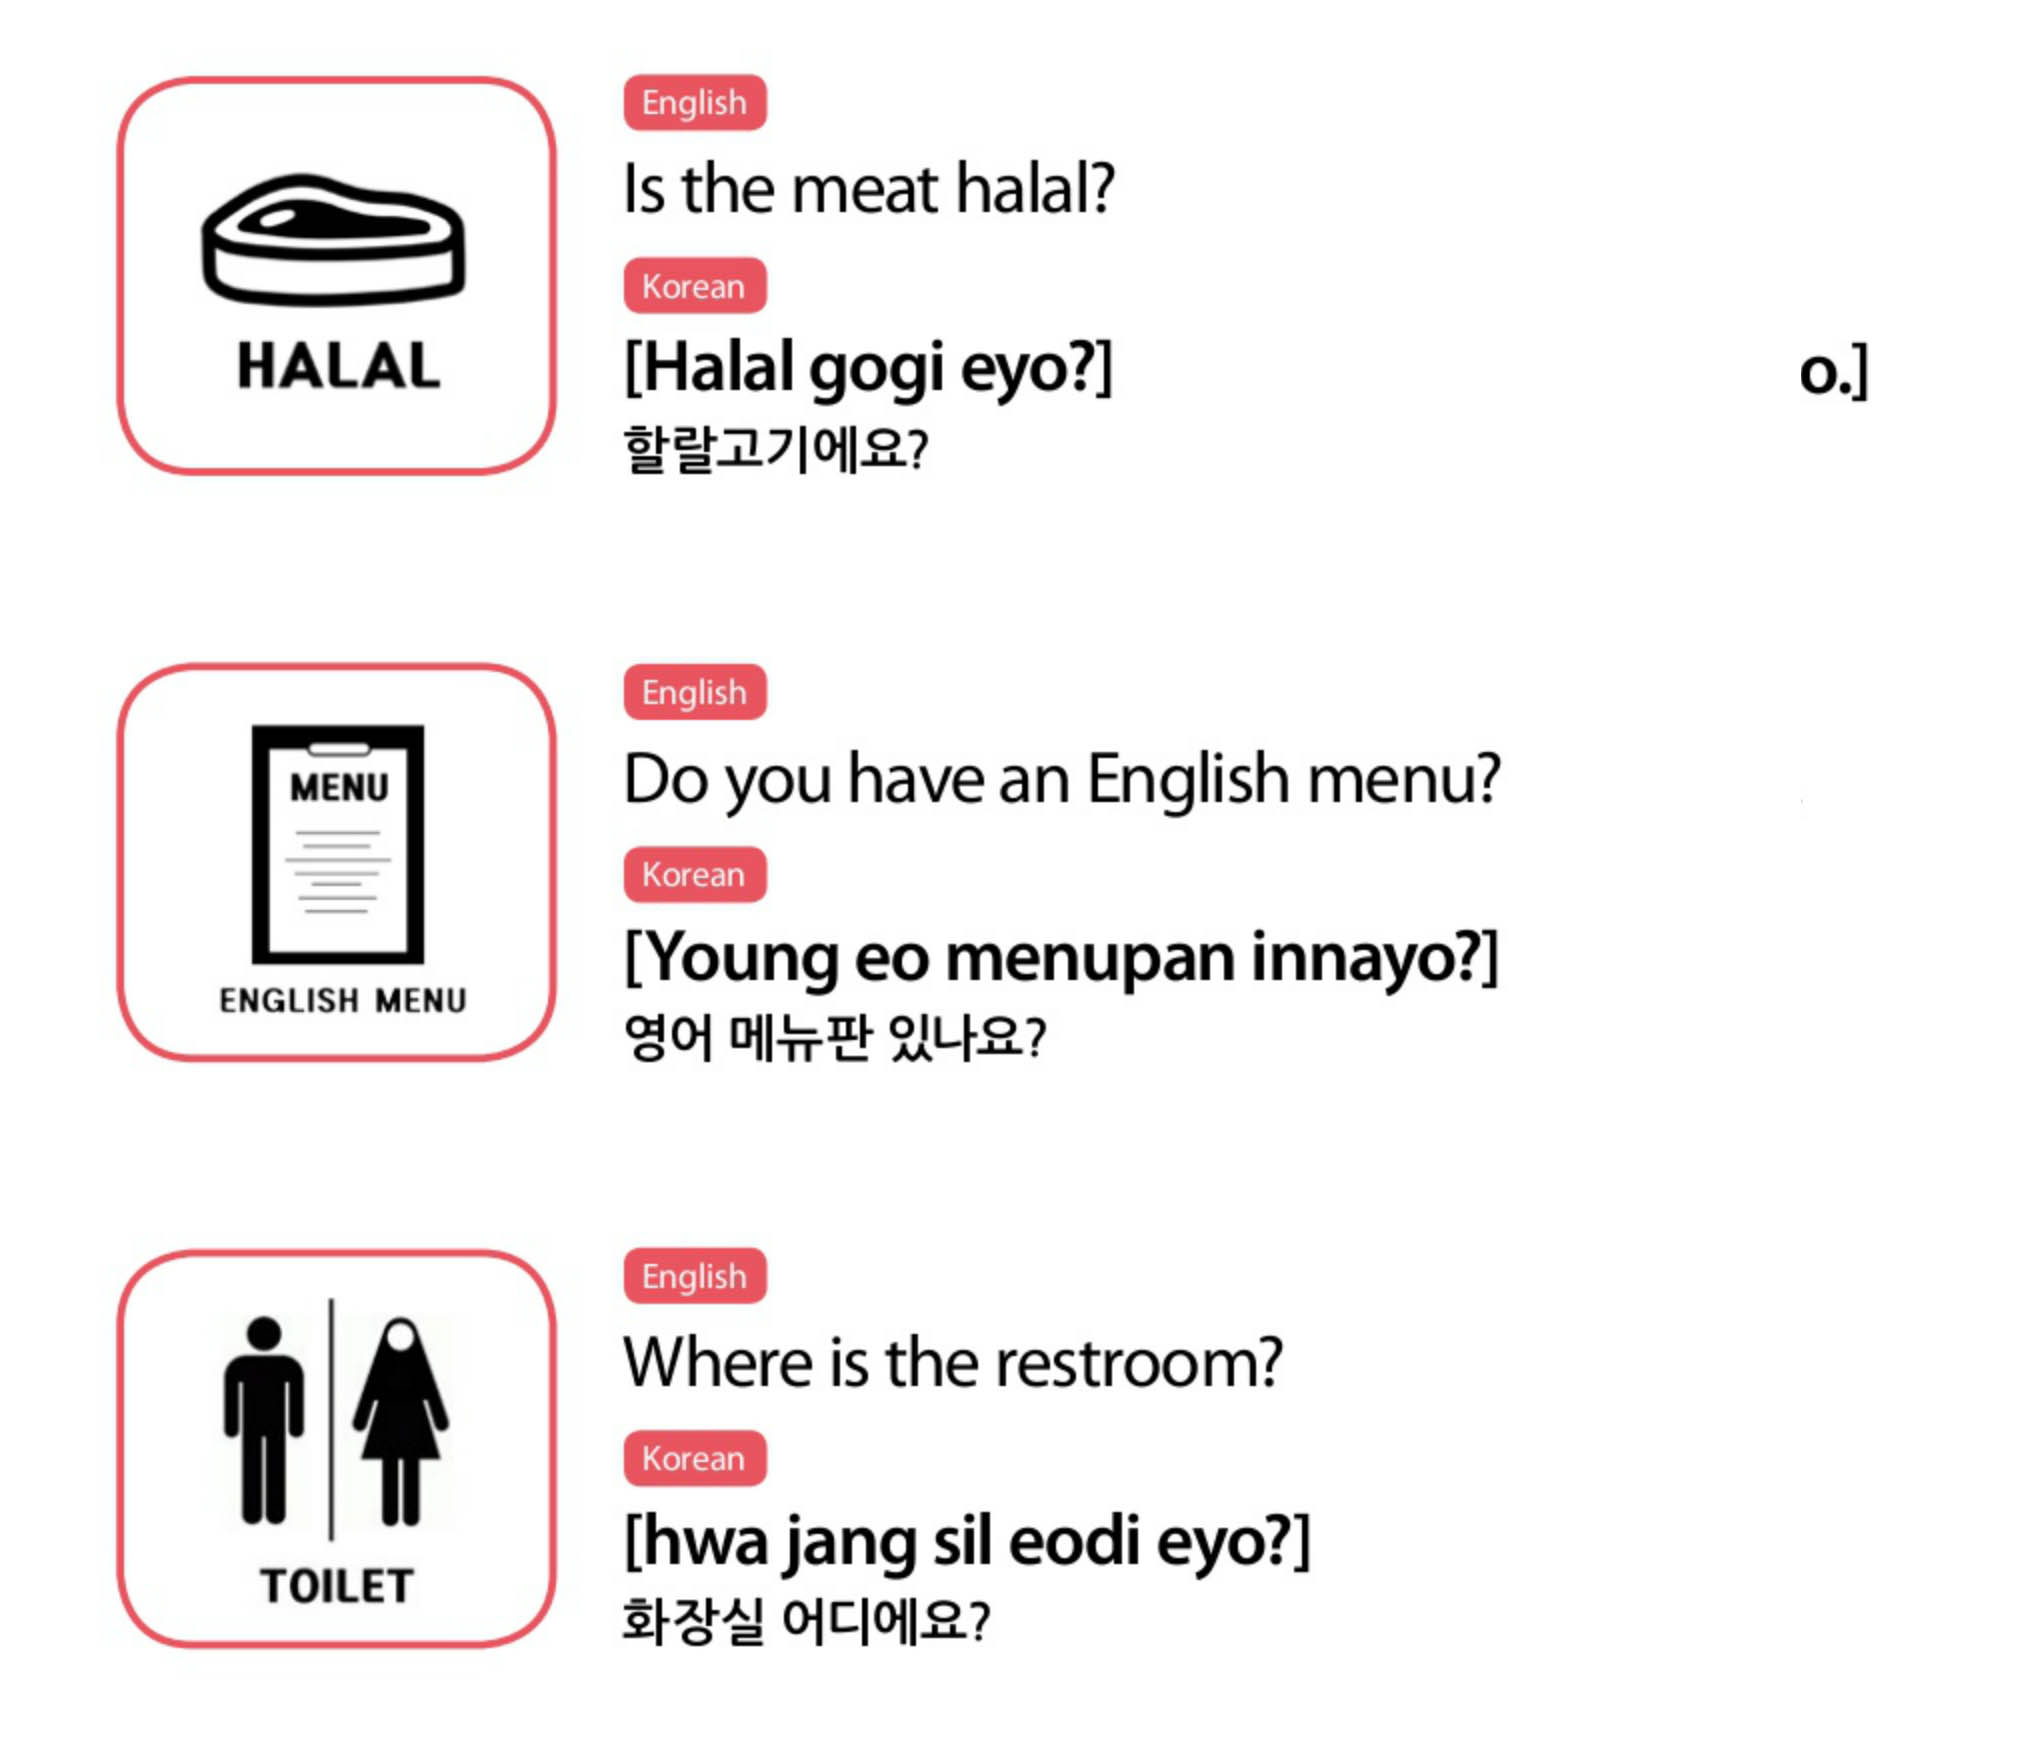 Muslim Friendly Restaurants Guide in Korea